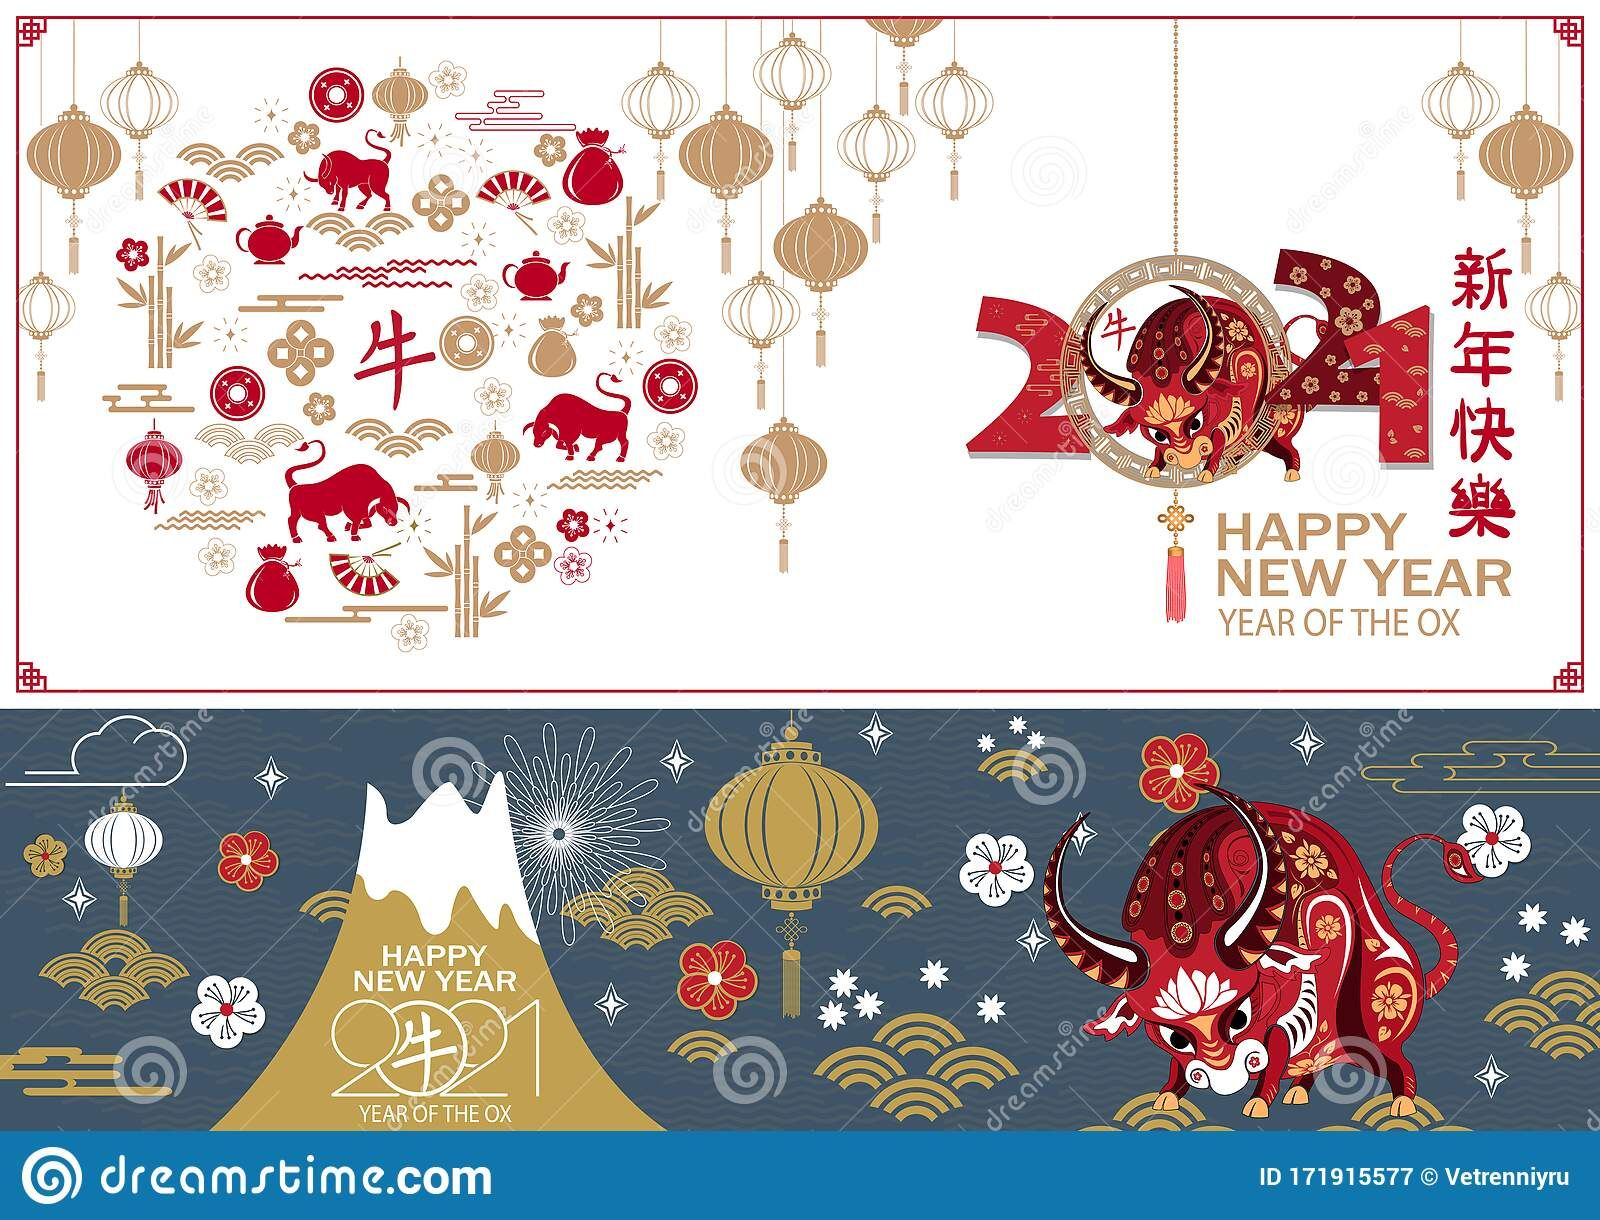 Lunar New Year 2021 - Oriental Music Zone Lunar New Year